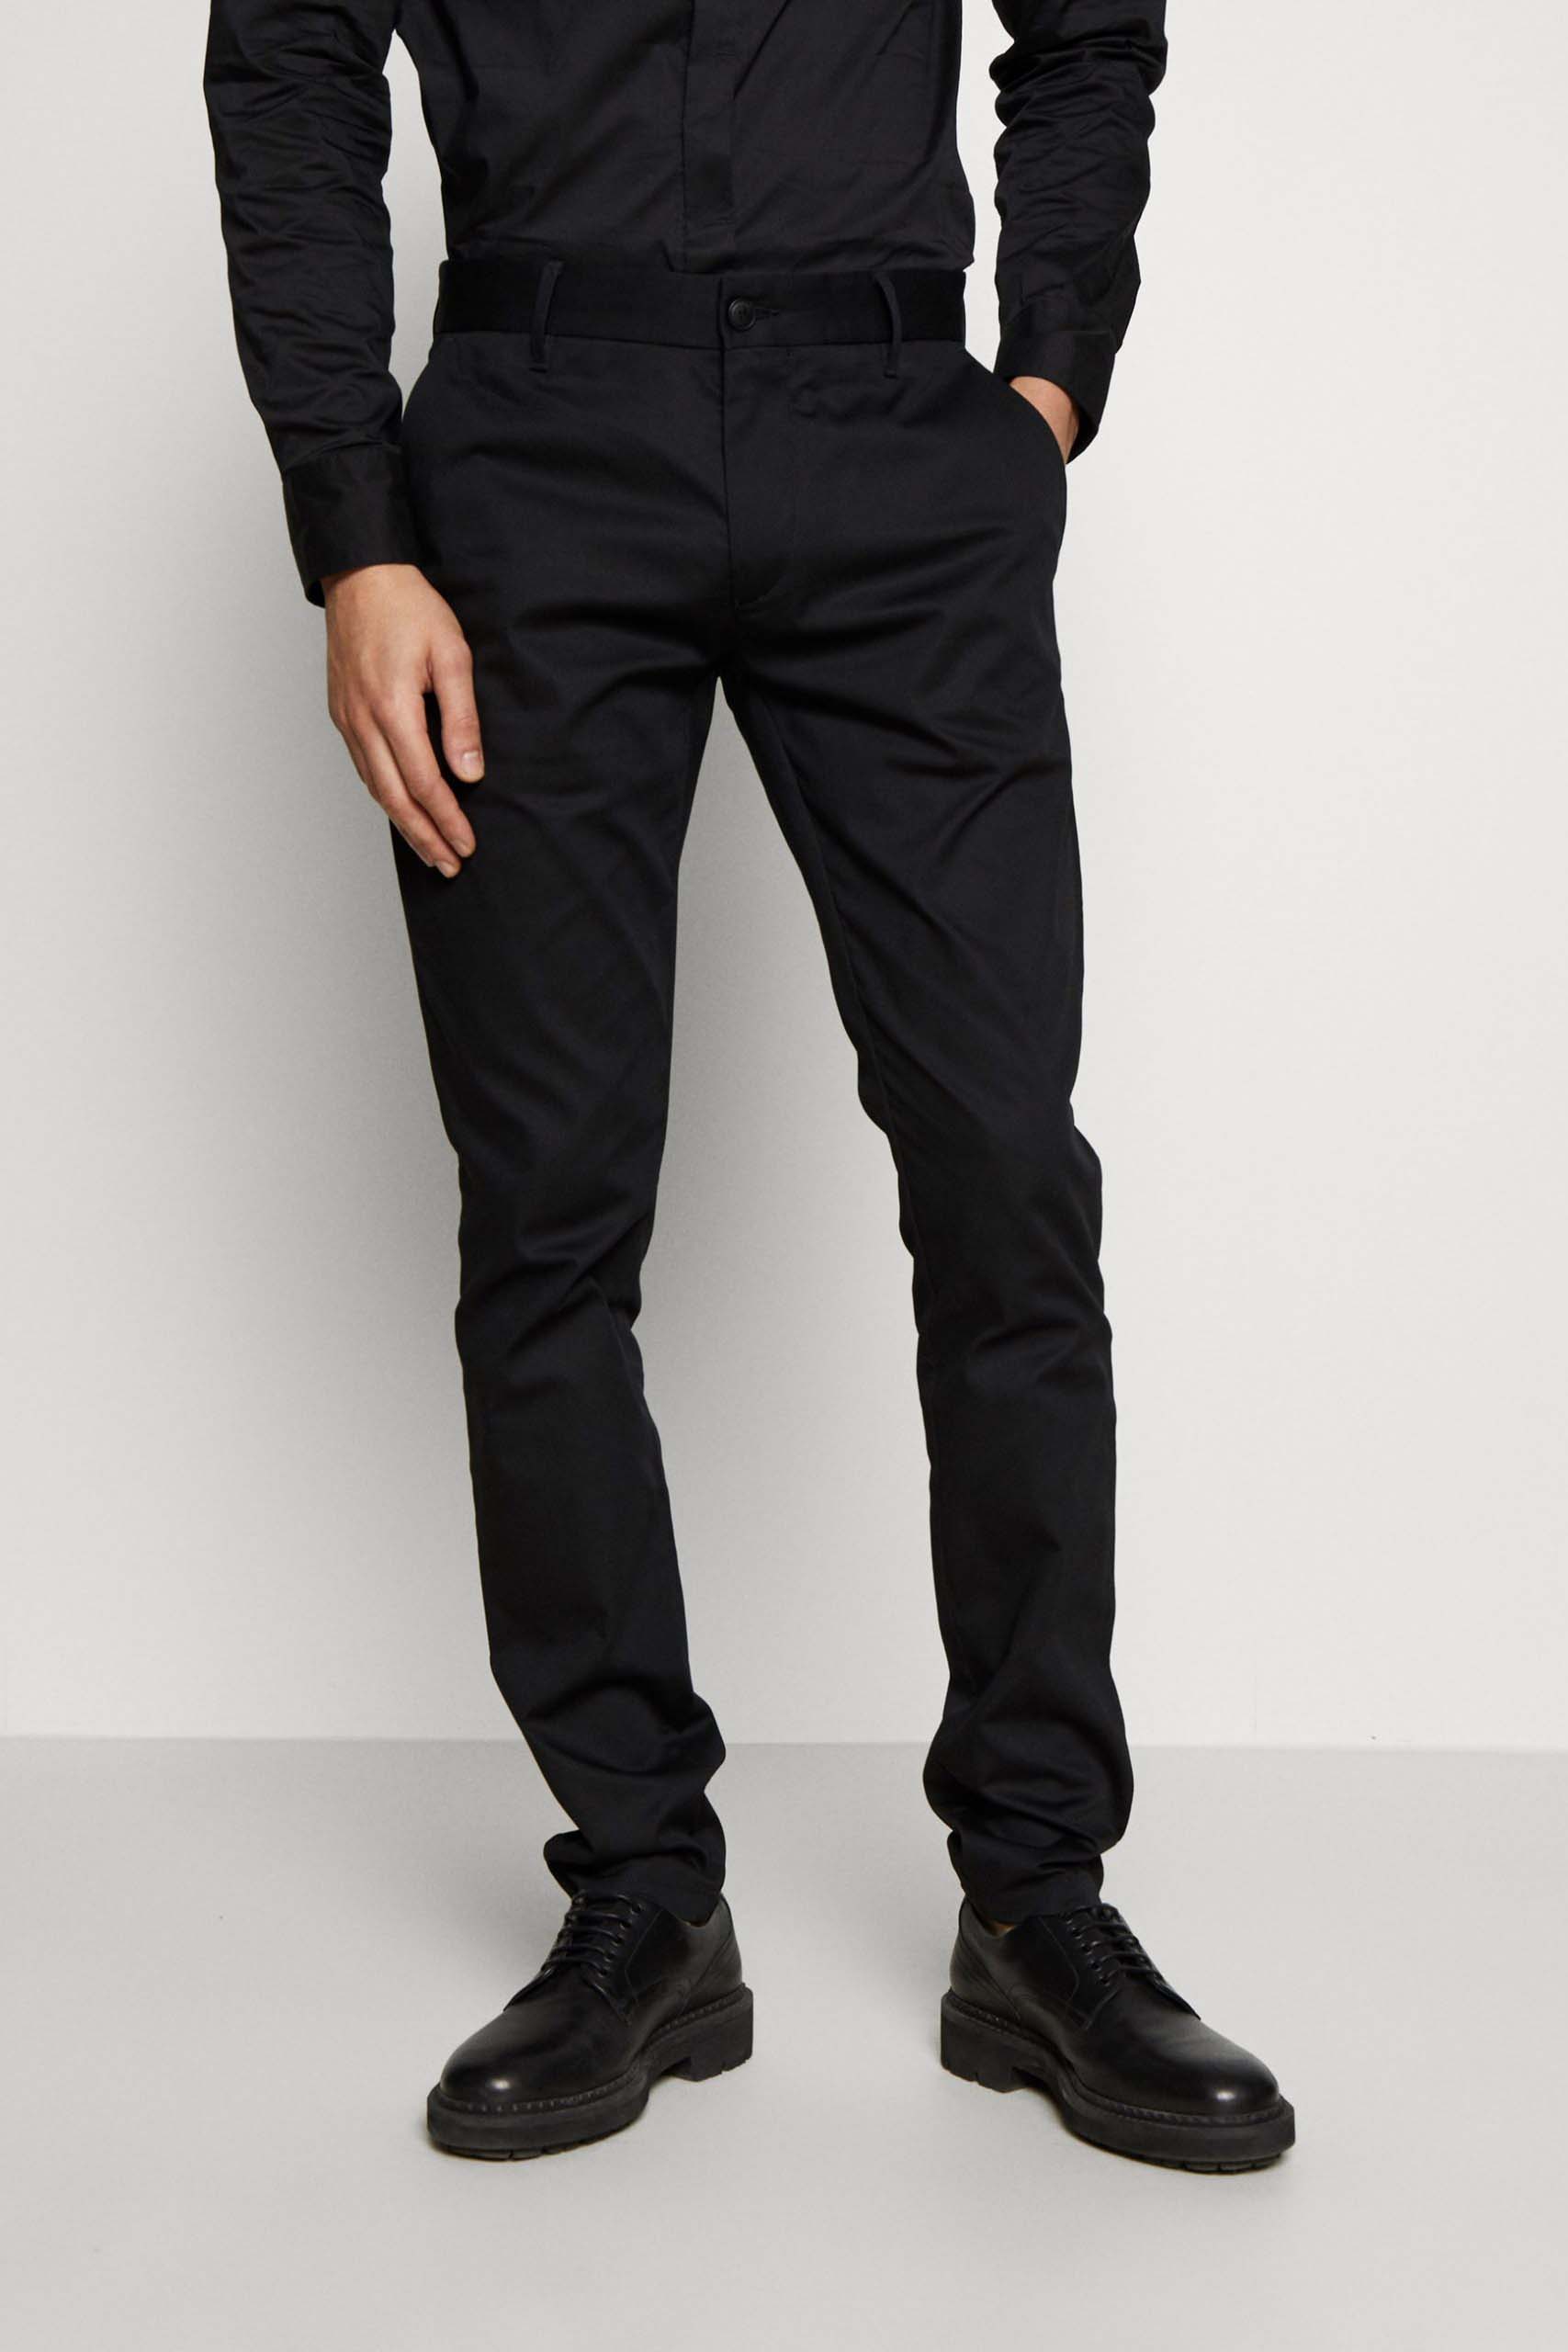 Pantalón de la marca Emporio Armani de Negro para hombre